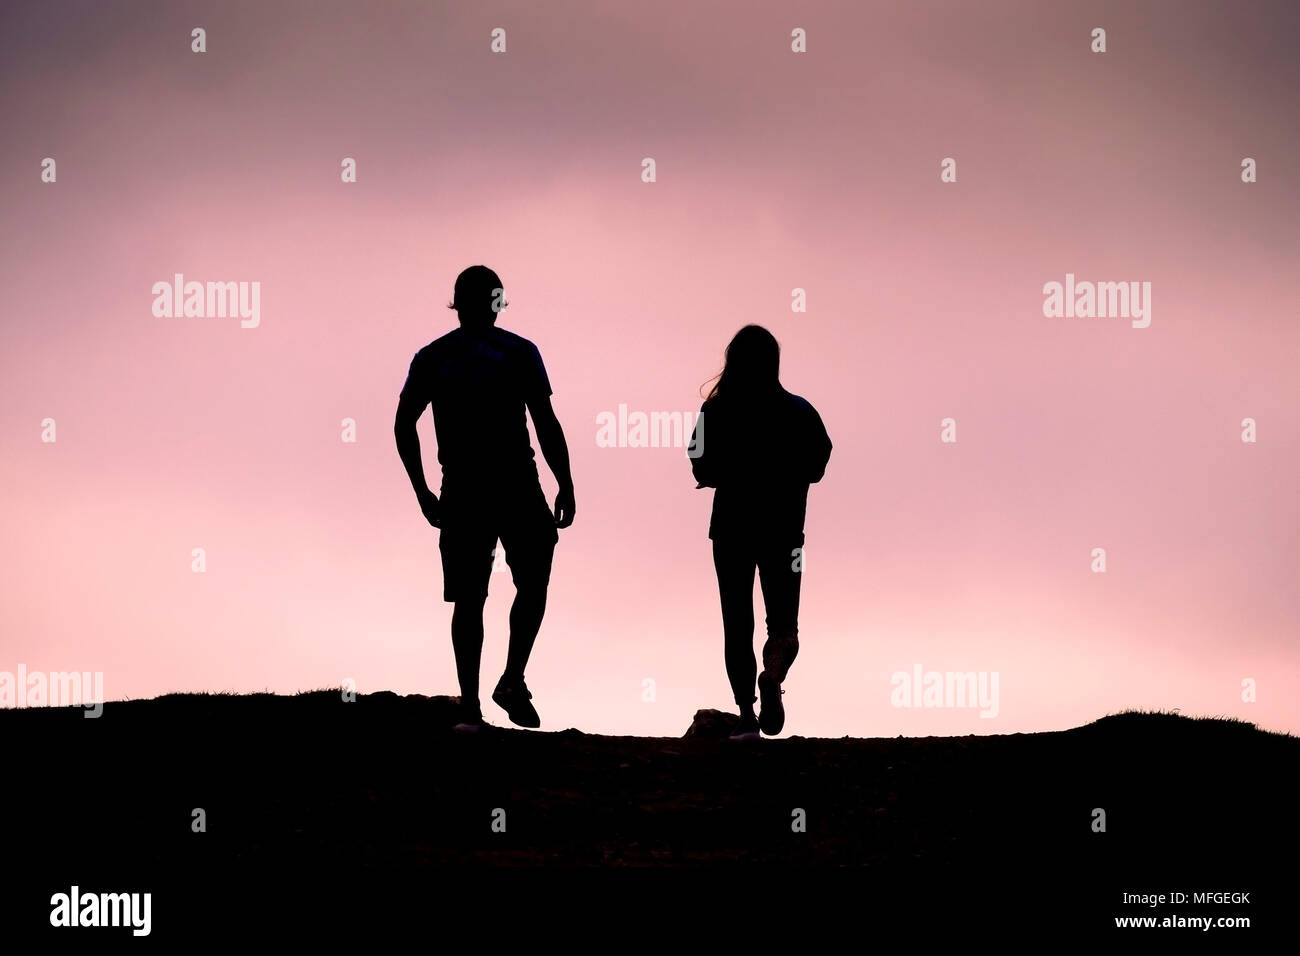 Un couple silhouette sur un ciel rose vif. Banque D'Images